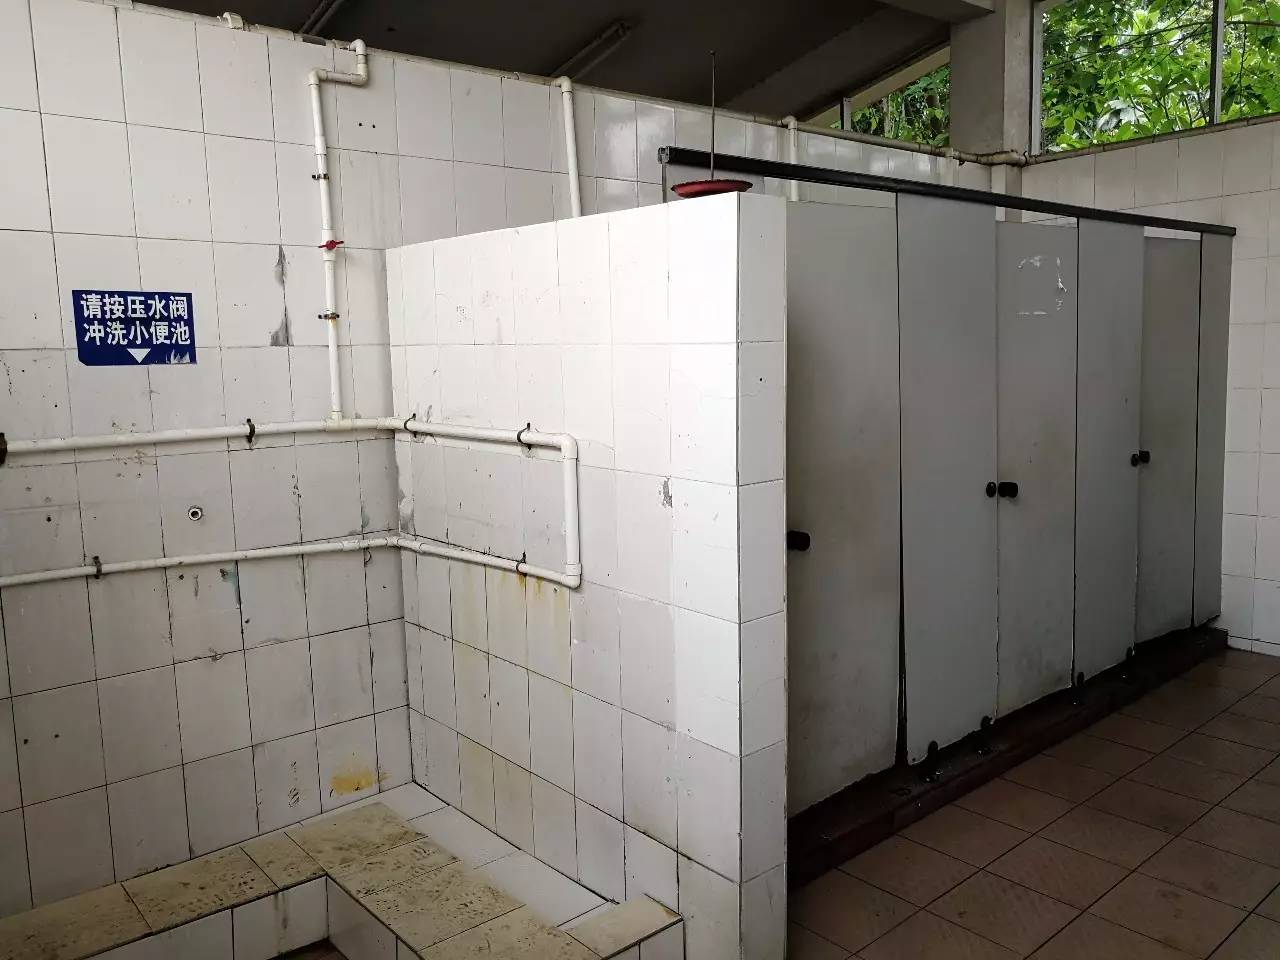 旧厕所现状图公厕文明仅有厕所建设者,管理者的努力是远远不够,公厕